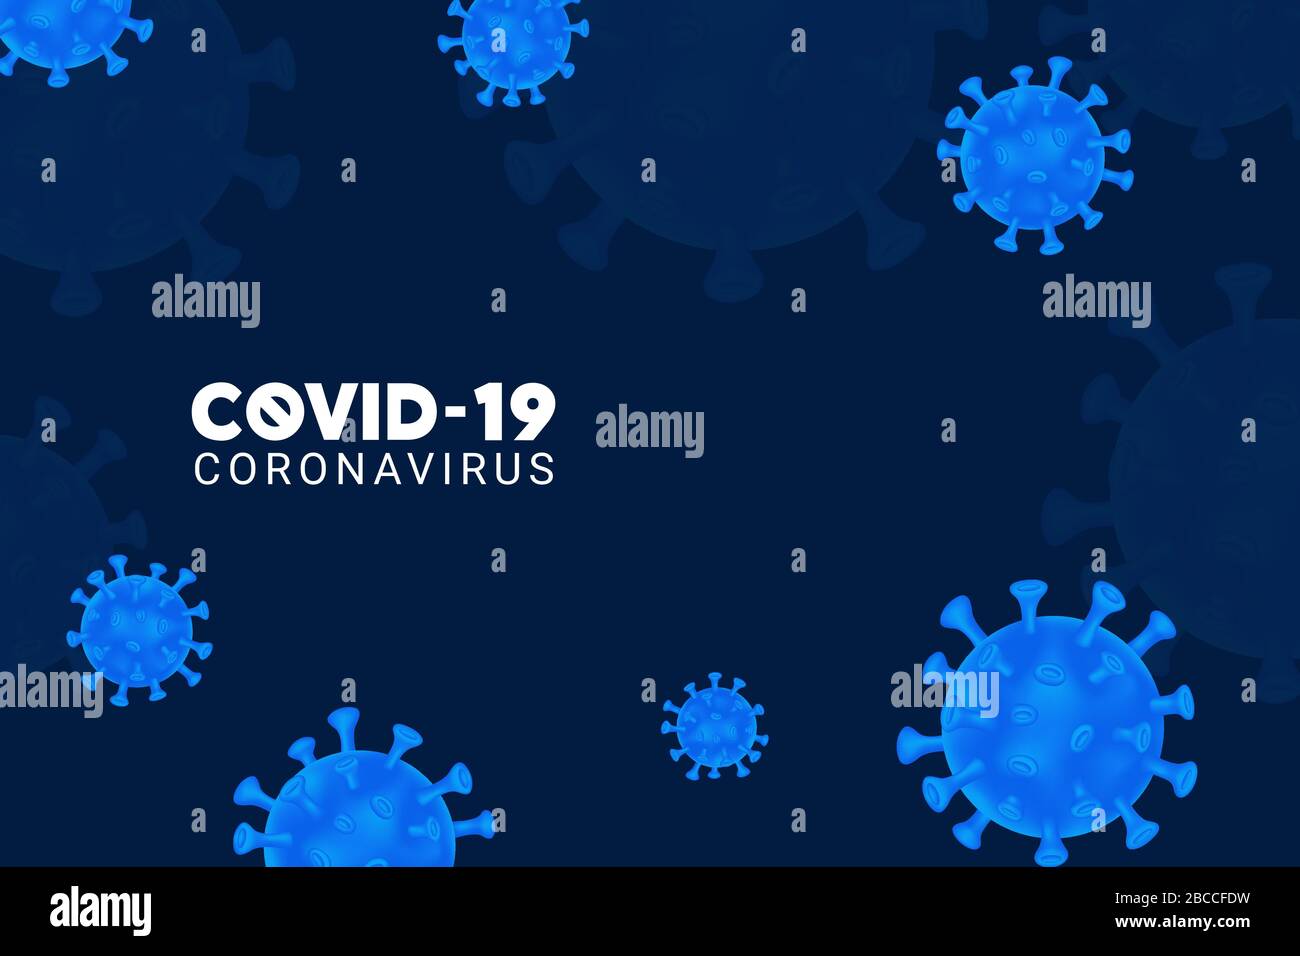 Virus Corona. COVID-19. Sfondo con cellule virali blu 3d realistiche. Sfondo scuro con coronavirus. Illustrazione vettoriale. Coronavirus sfondo. Illustrazione Vettoriale